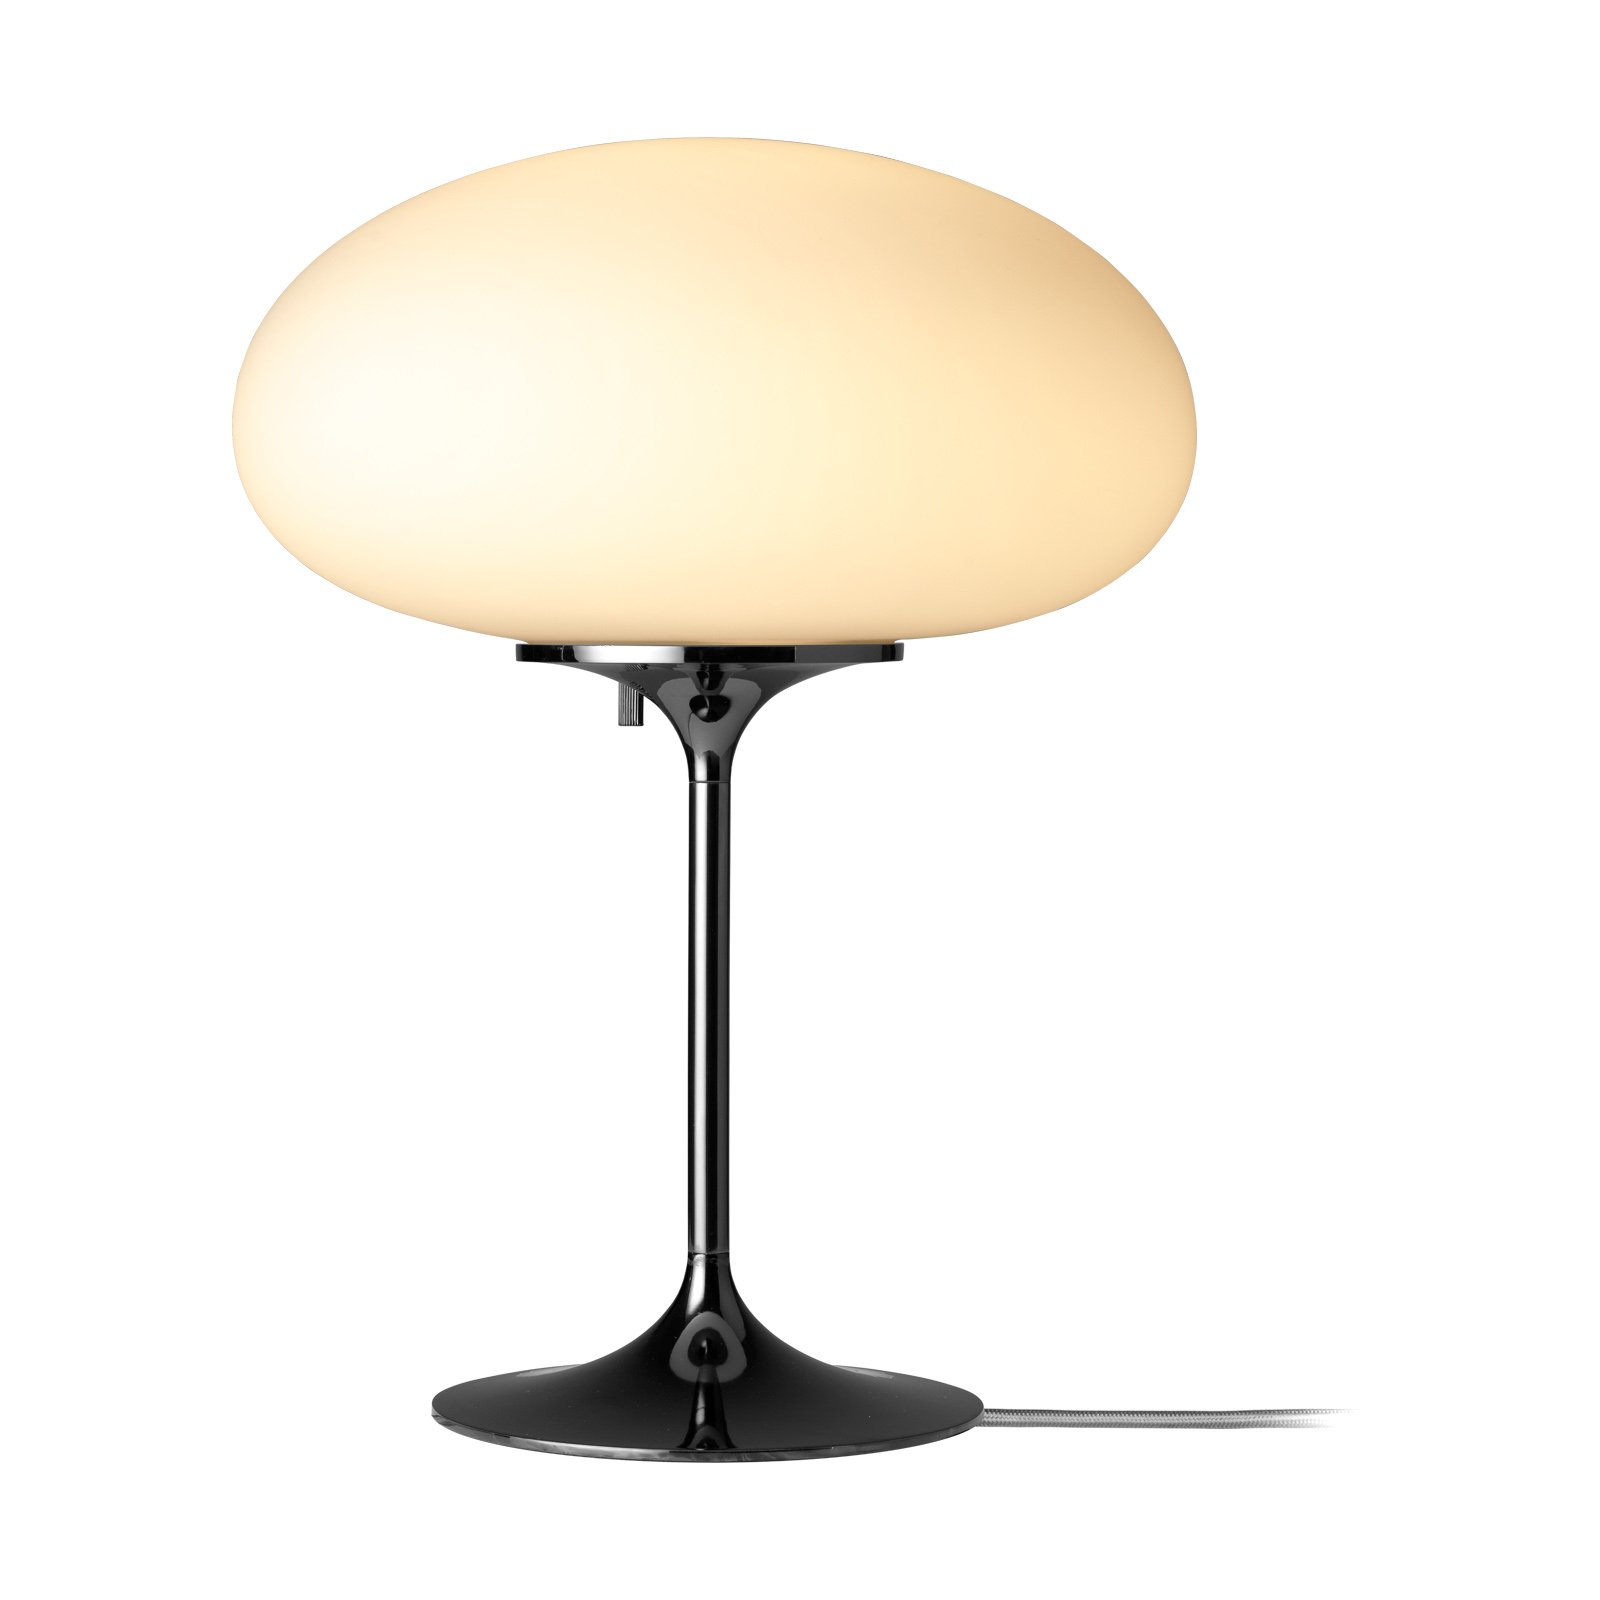 GUBI Stemlite table lamp, black chrome, 42 cm